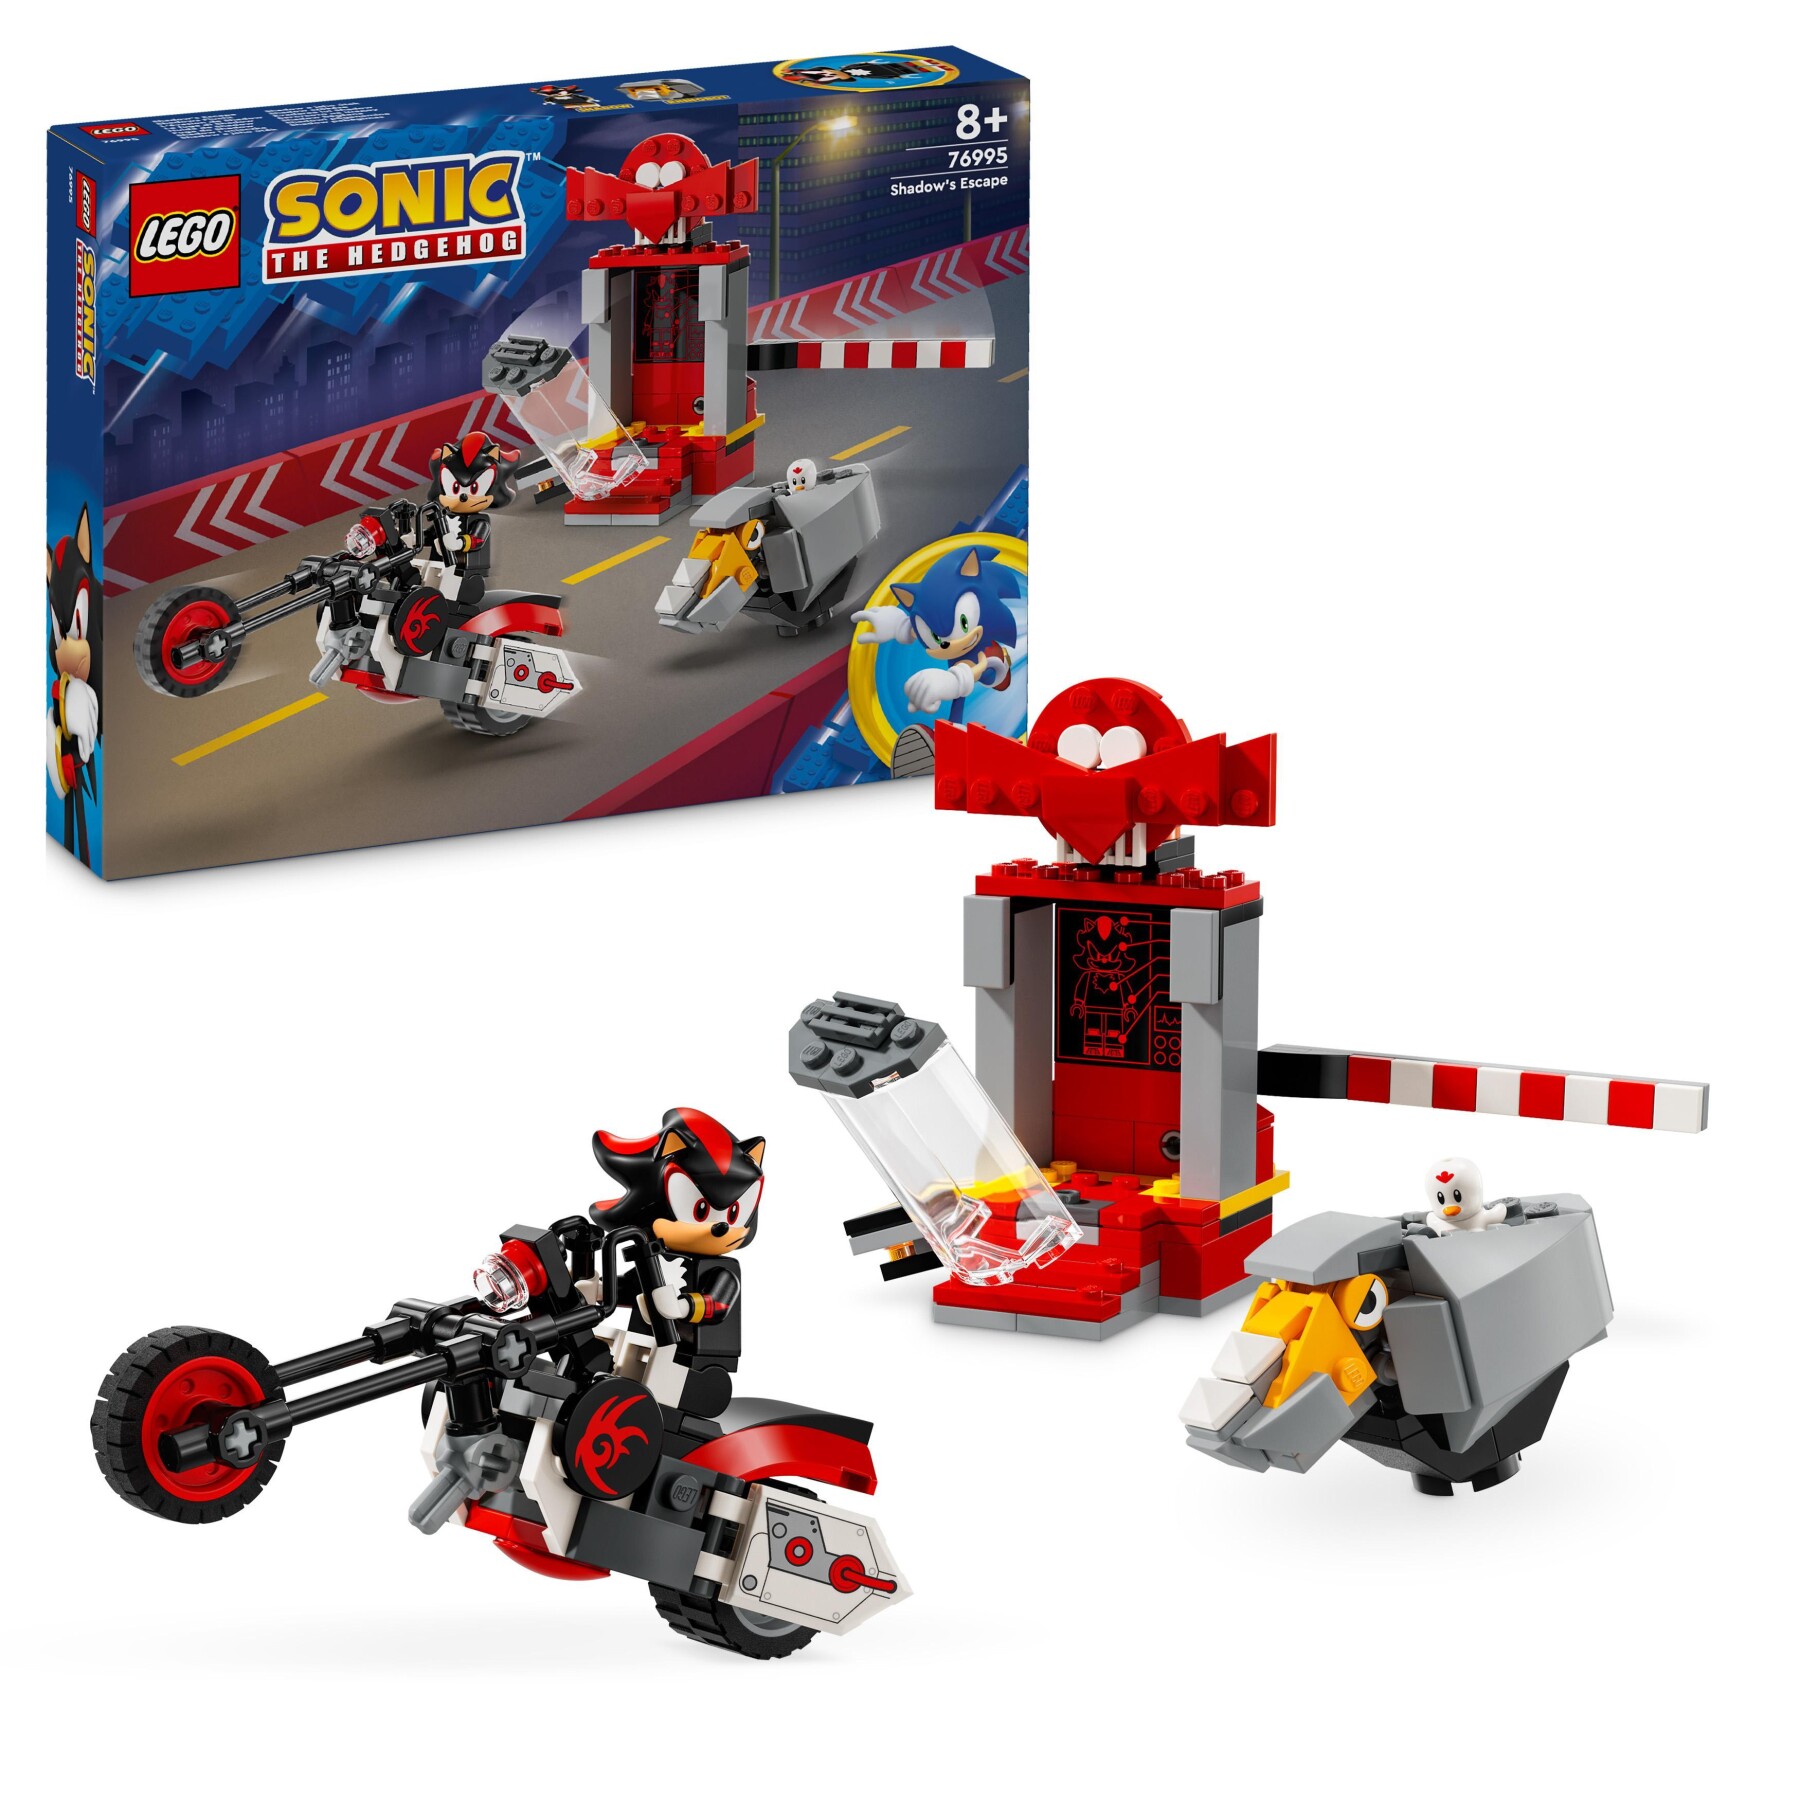 Lego sonic the hedgehog 76995 la fuga di shadow the hedgehog con moto giocattolo per bambini 8+ anni, personaggi videogiochi - Sonic, Lego